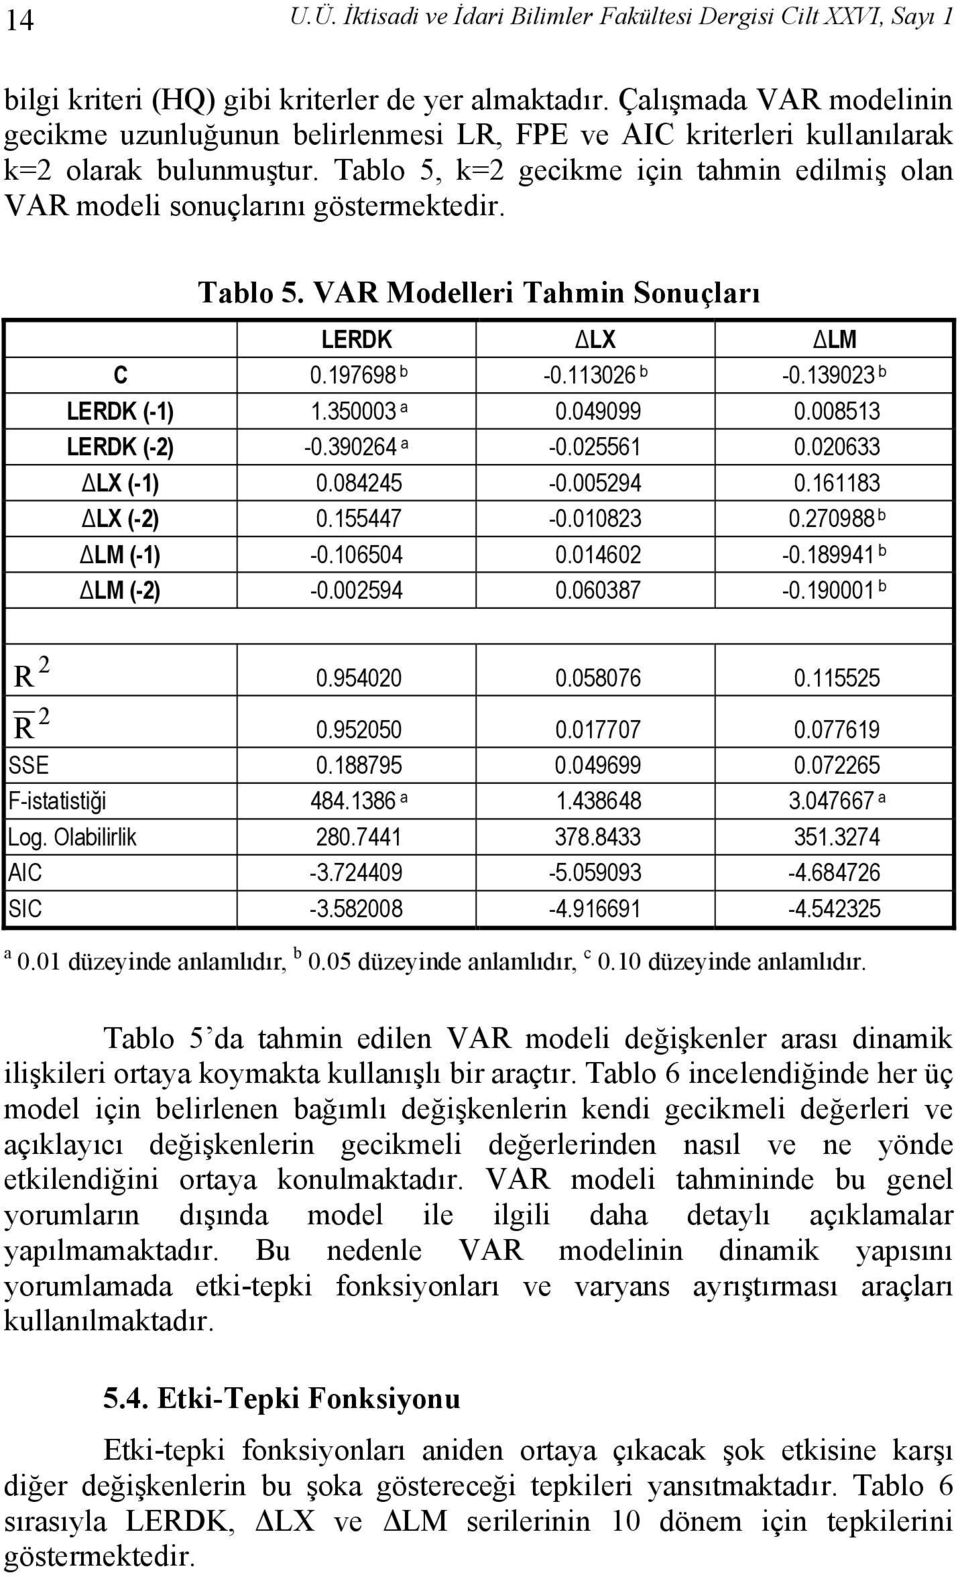 Tablo 5, k=2 gecikme için tahmin edilmiş olan VAR modeli sonuçlarını göstermektedir. Tablo 5. VAR Modelleri Tahmin Sonuçları LERDK LX LM C 0.197698 b -0.113026 b -0.139023 b LERDK (-1) 1.350003 a 0.